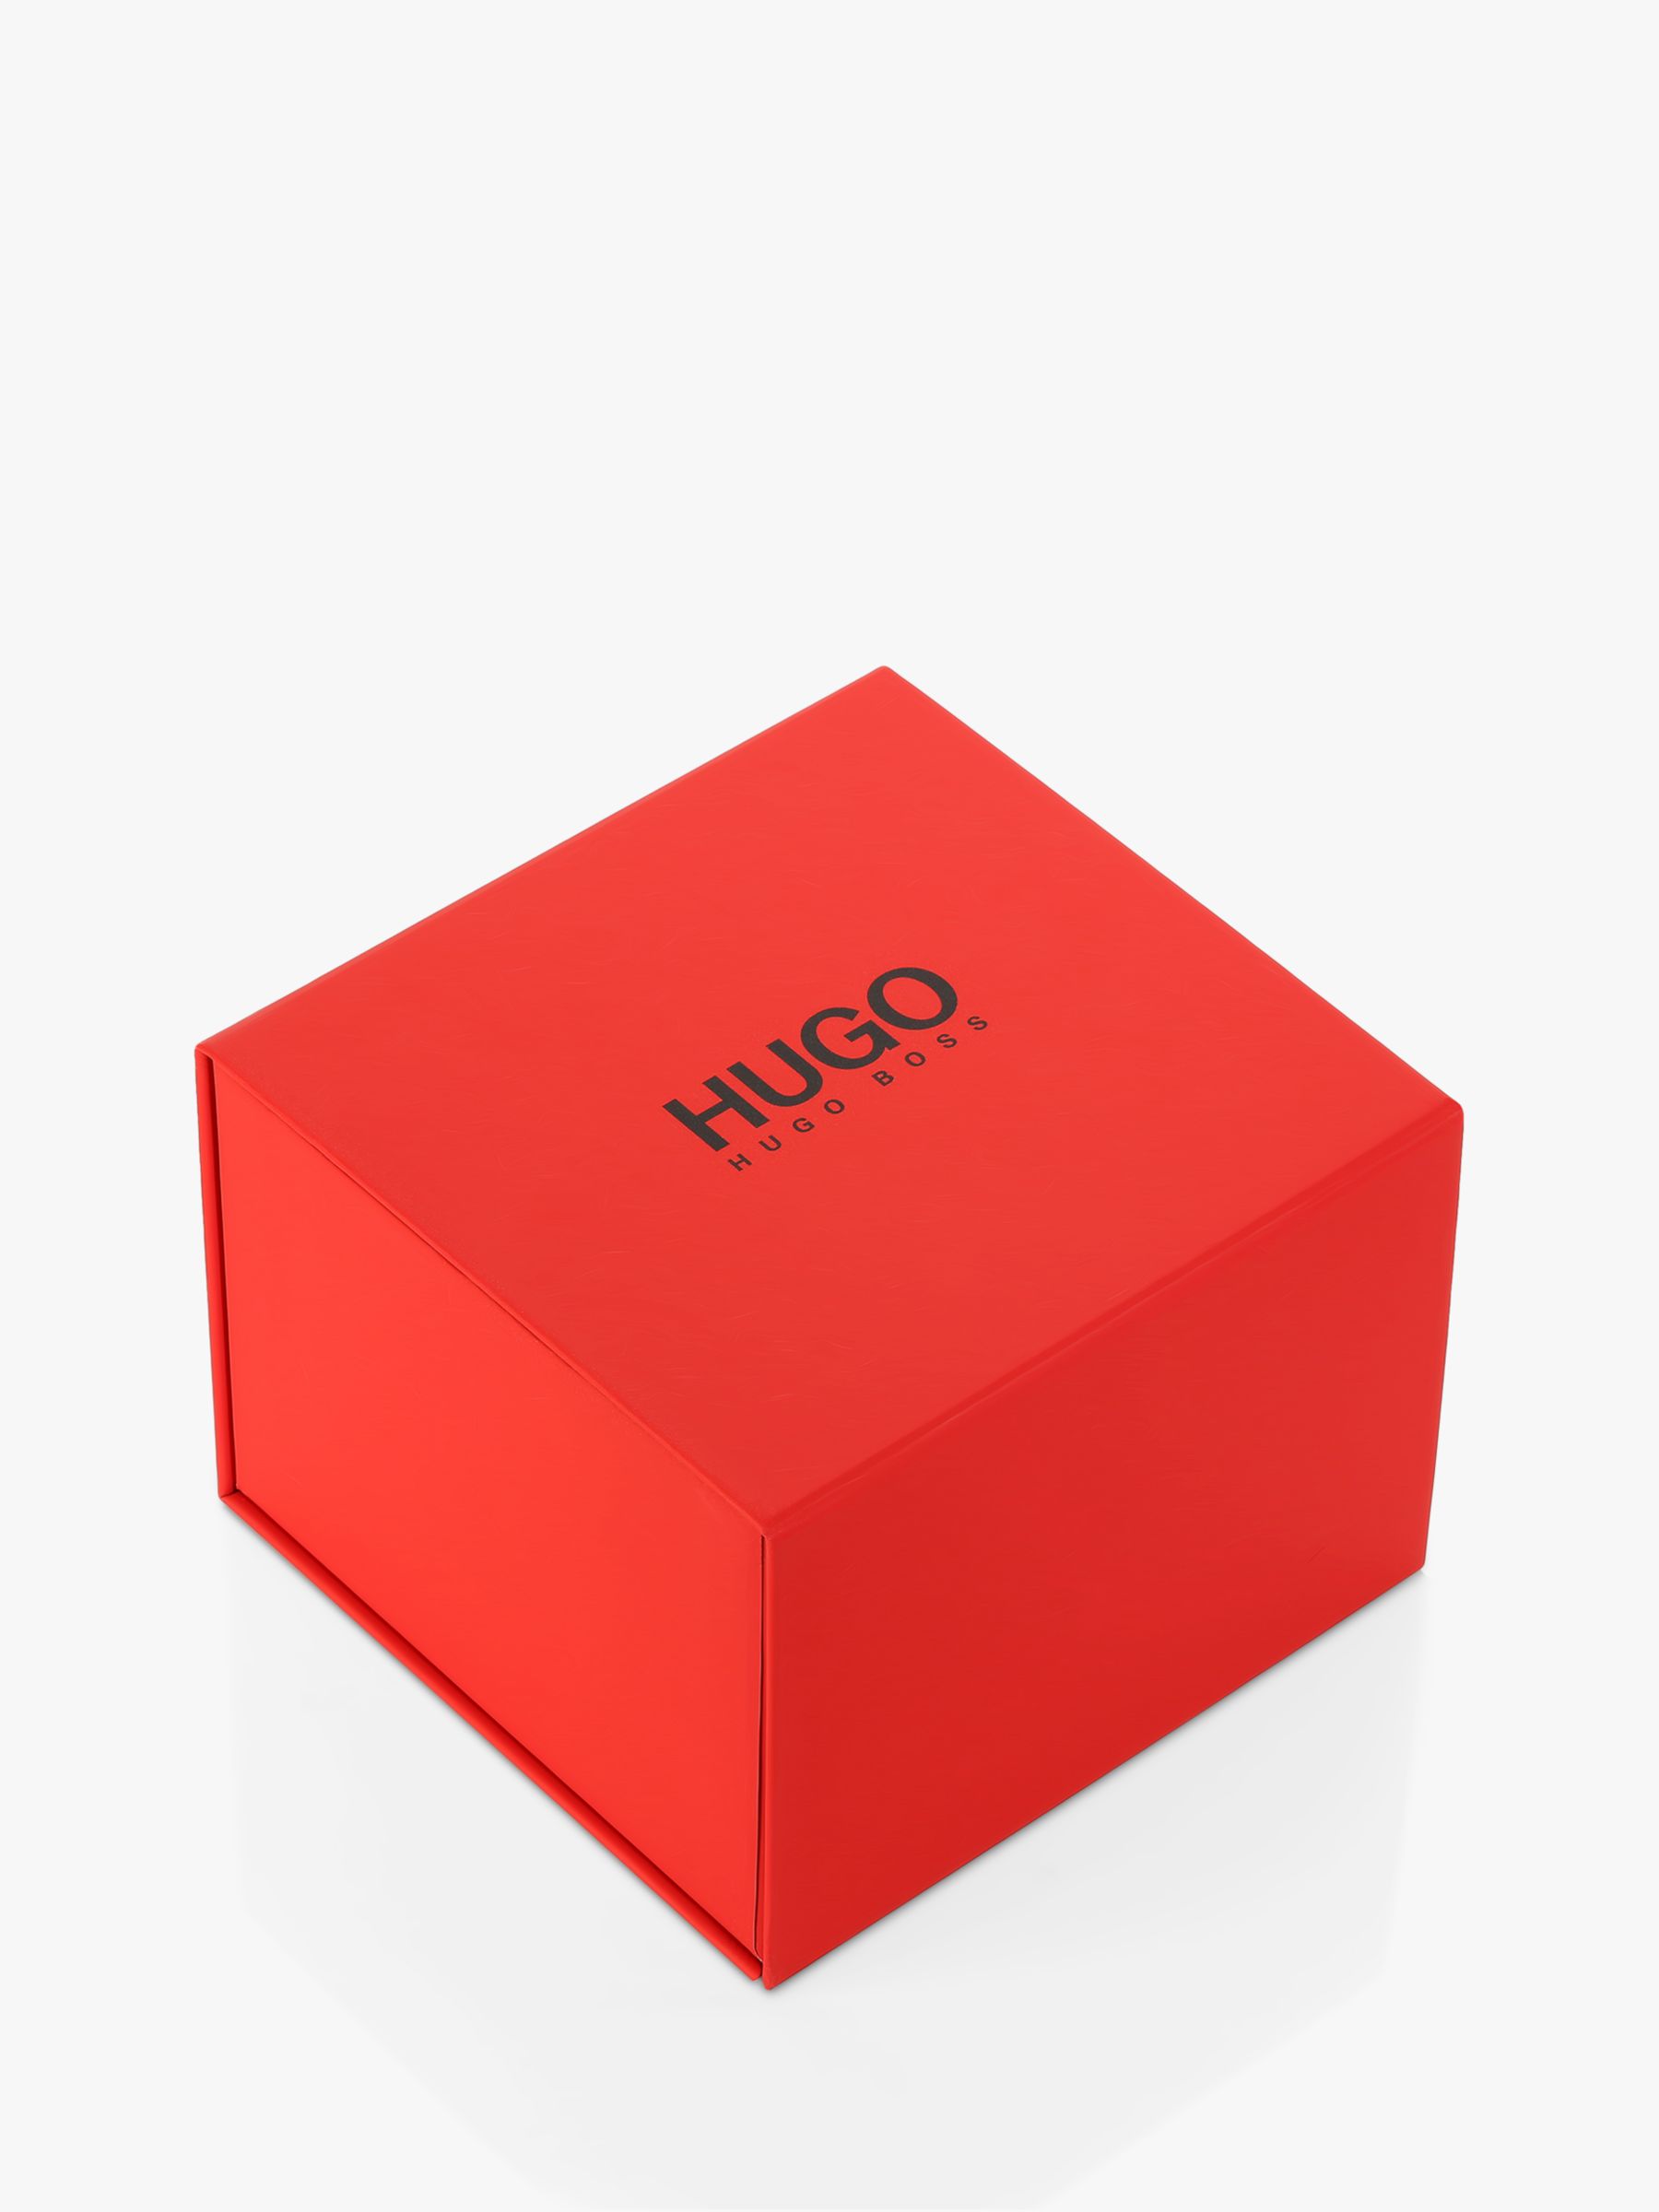 hugo boss red box